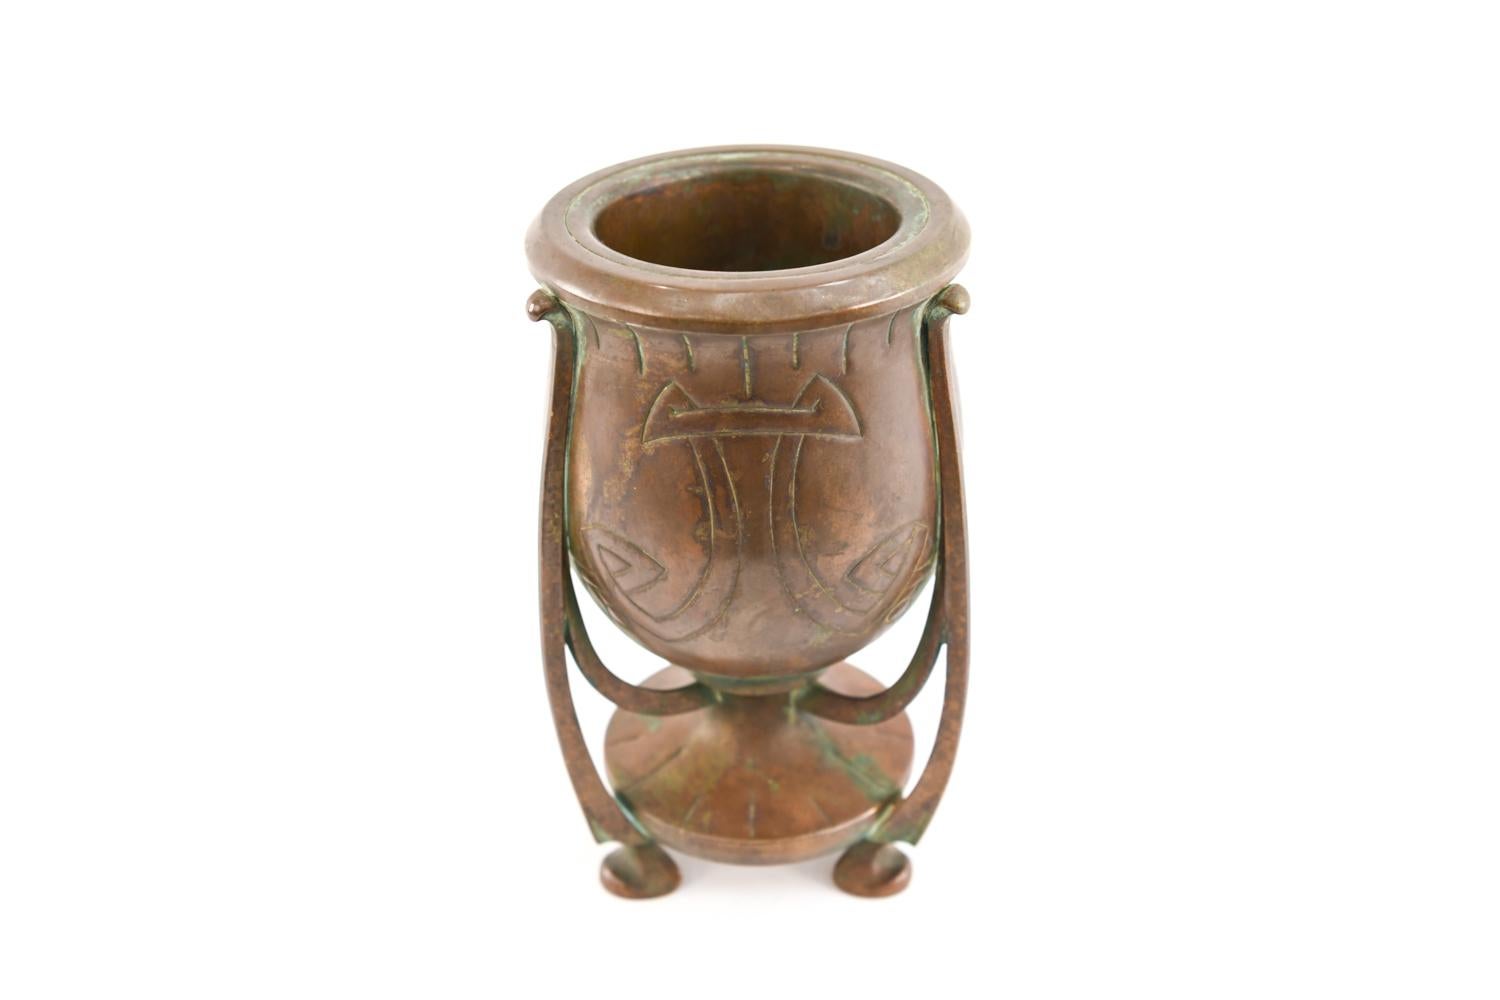 Dieses Gefäß von faszinierender Form hat eine schöne patinierte Bronzeoberfläche. Dieses Stück würde ein Regal oder einen Tisch bereichern.